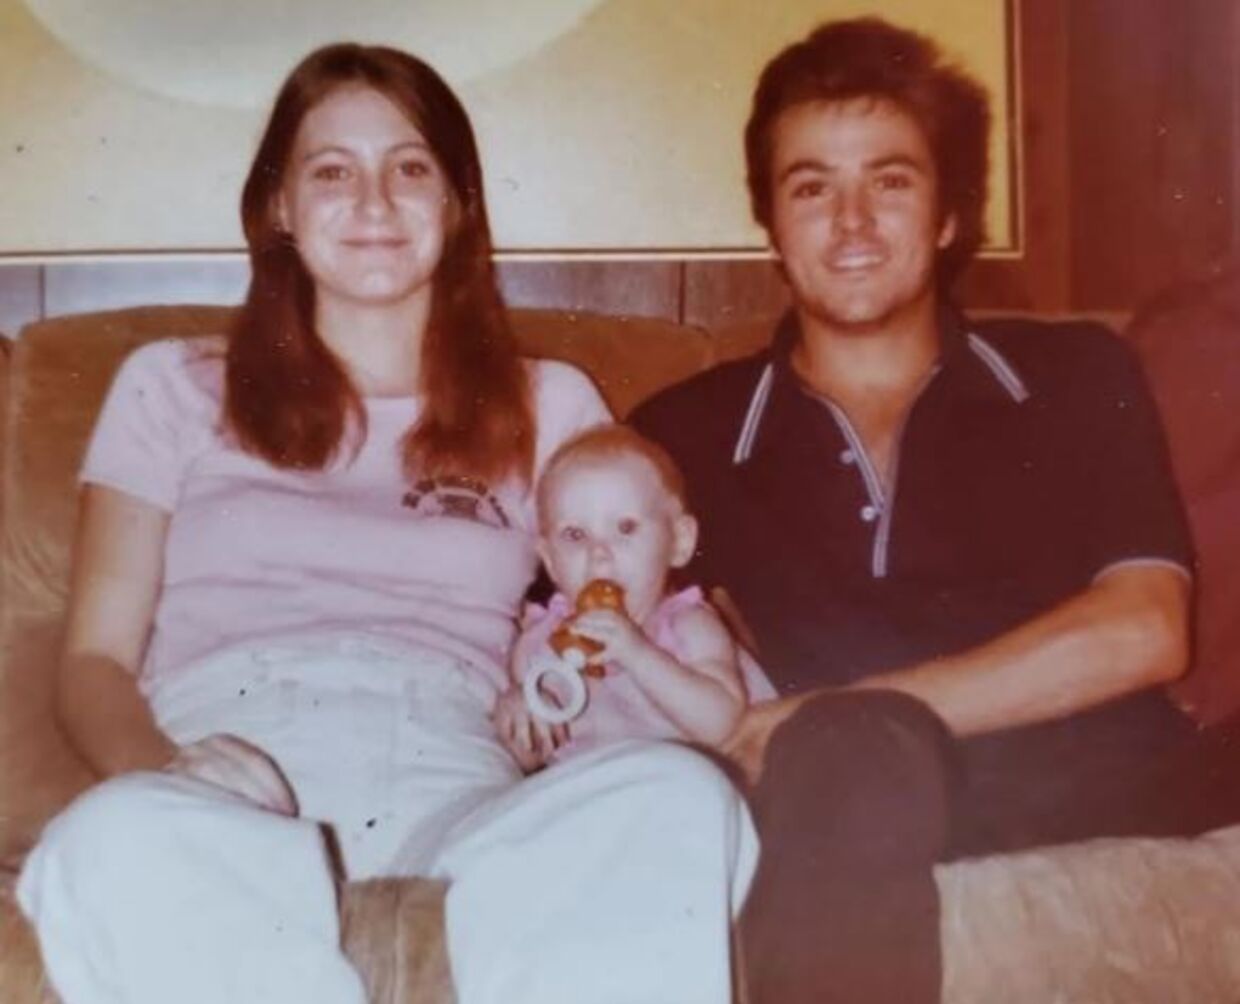 Det nygifte par Harold Clouse, 21, og Tina Gail, 17, med deres lille datter Holly. Ægteparret blev i 1981 fundet myrdede i Texas, men i årtier var ligene uidentificerede. Nu er datteren efter 42 års uvished fundet i live.